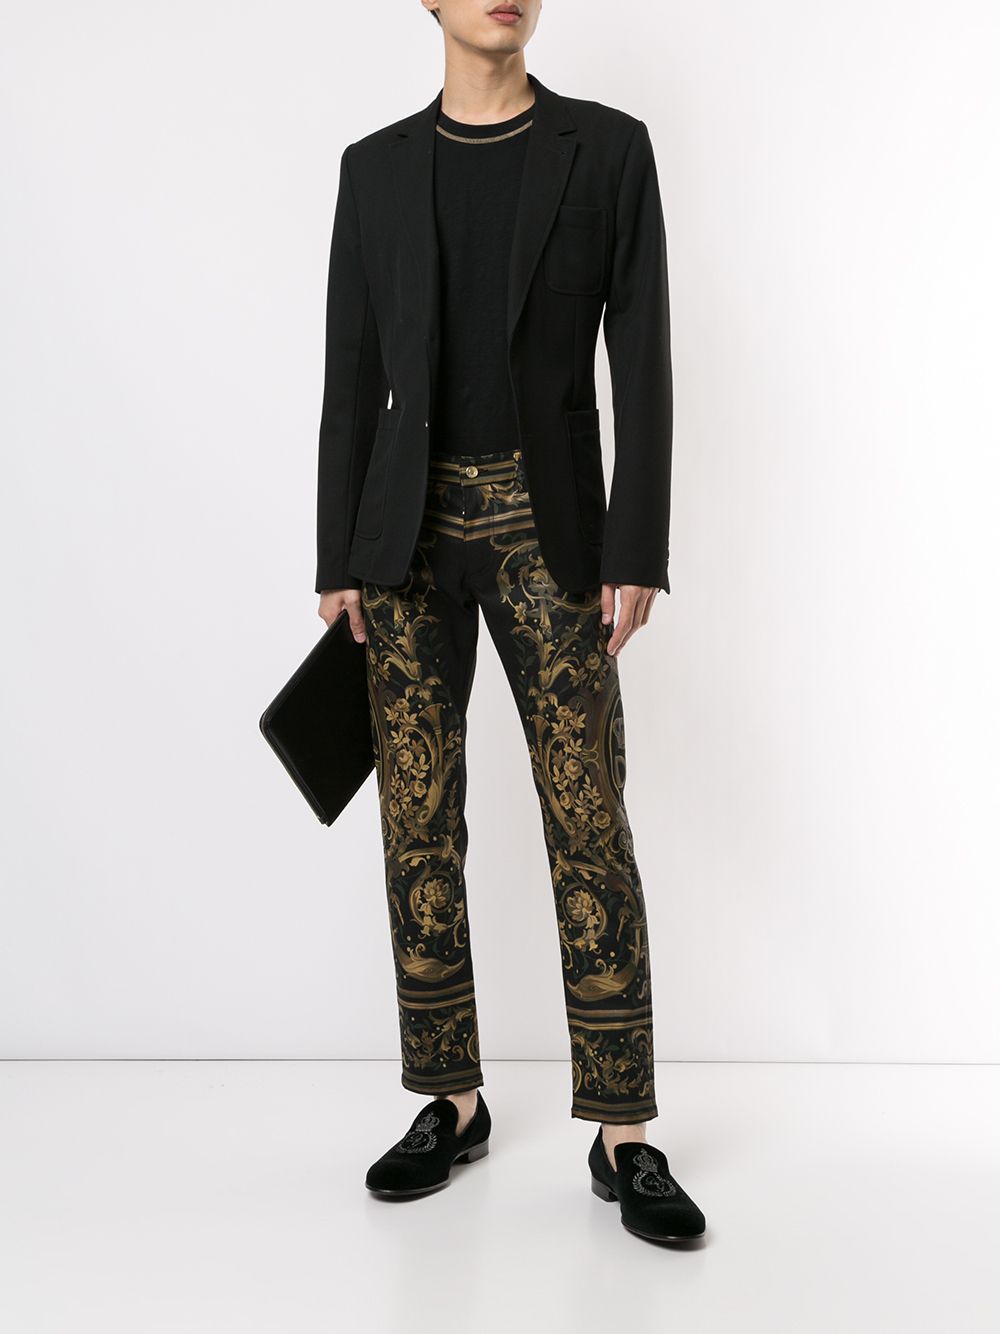 фото Dolce & Gabbana джинсы скинни с цветочным принтом